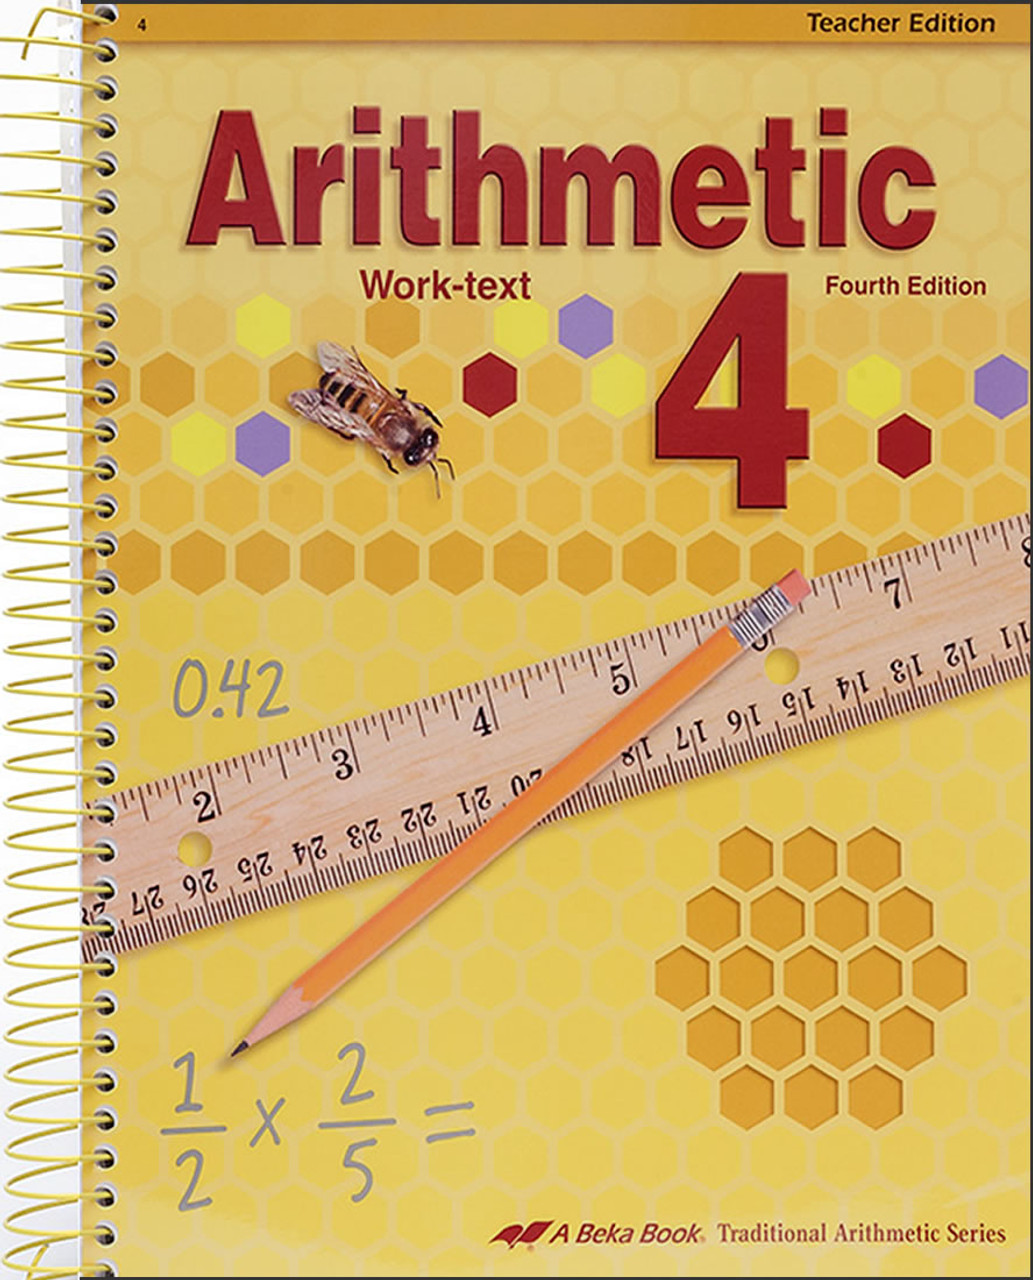 Arithmetic 4, 4th edition - Teacher Edition